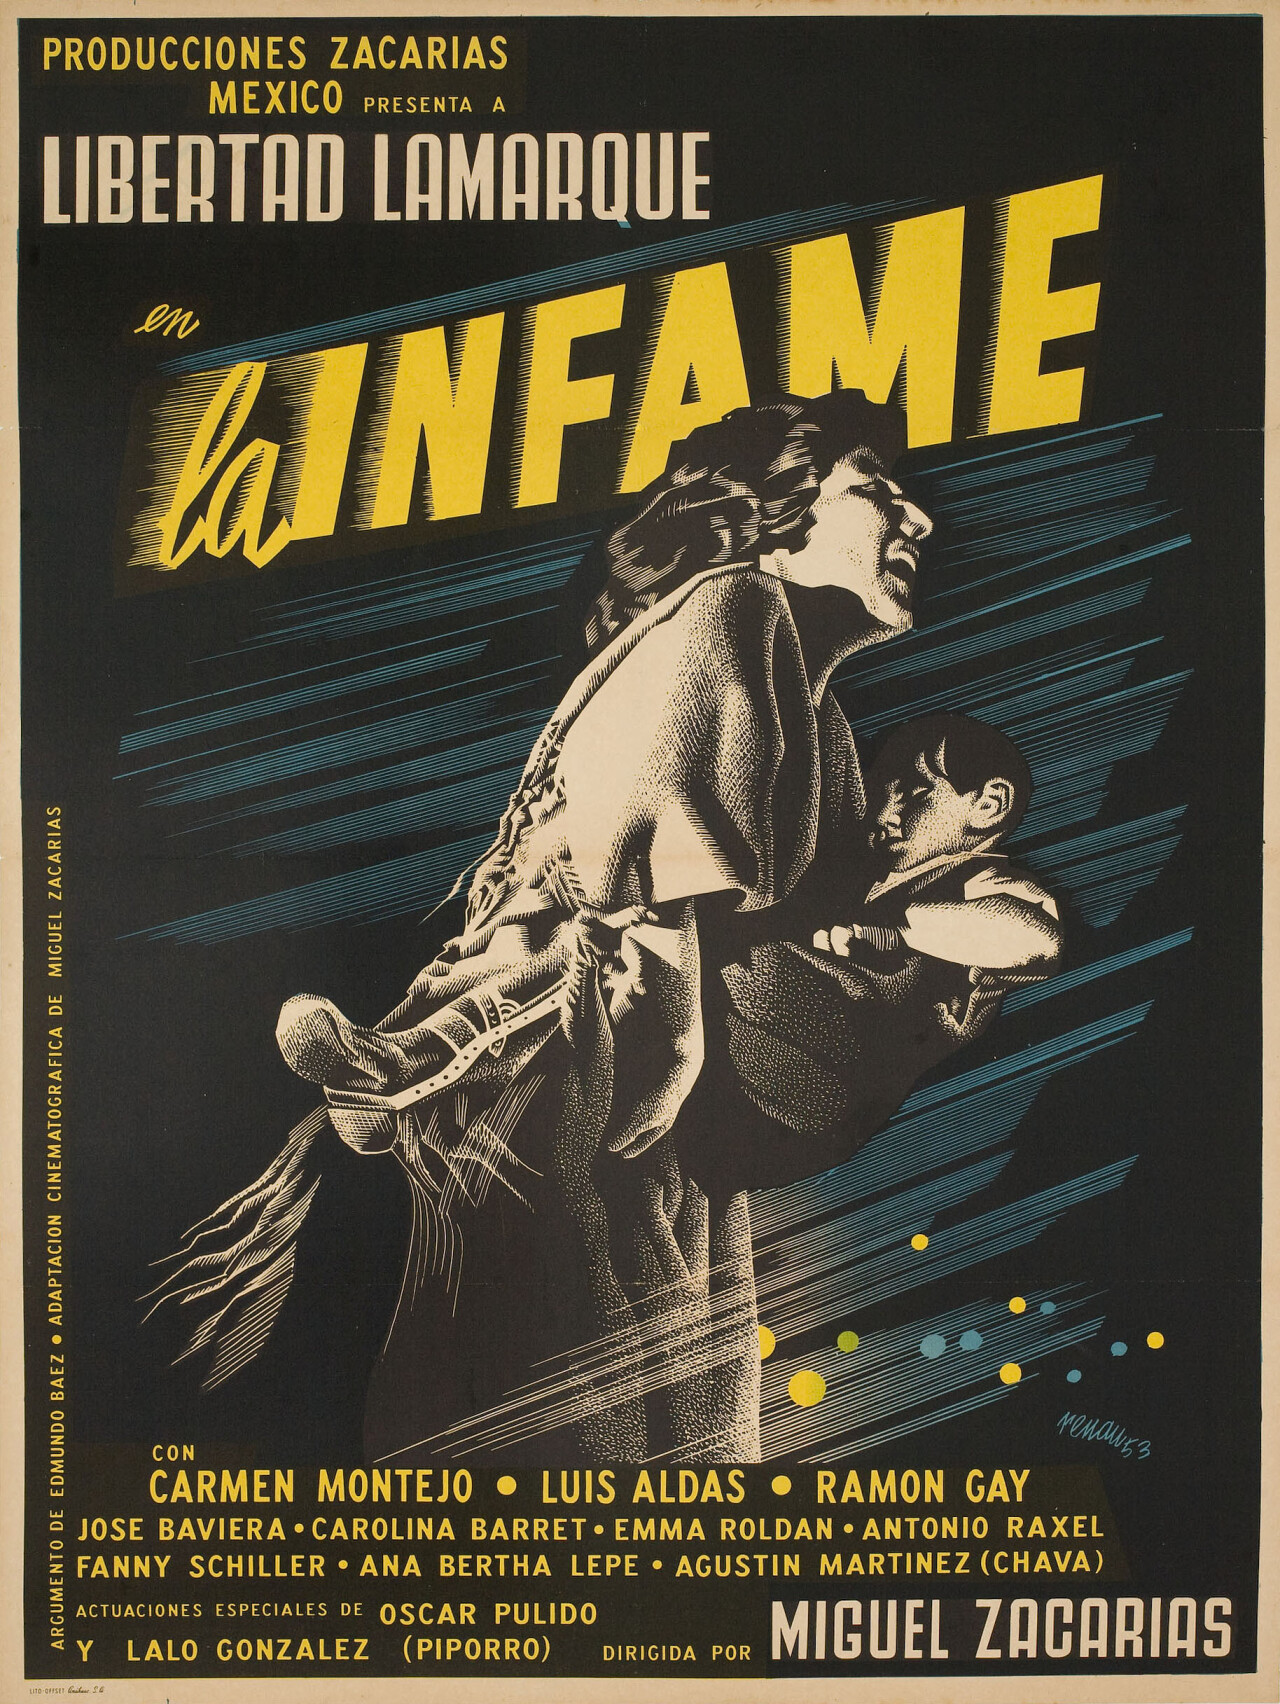 Печально известная (La infame), 1954 год, режиссёр Мигель Сакариас, мексиканский постер к фильму, автор Жозеп Ренау (графический дизайн, 1954 год)